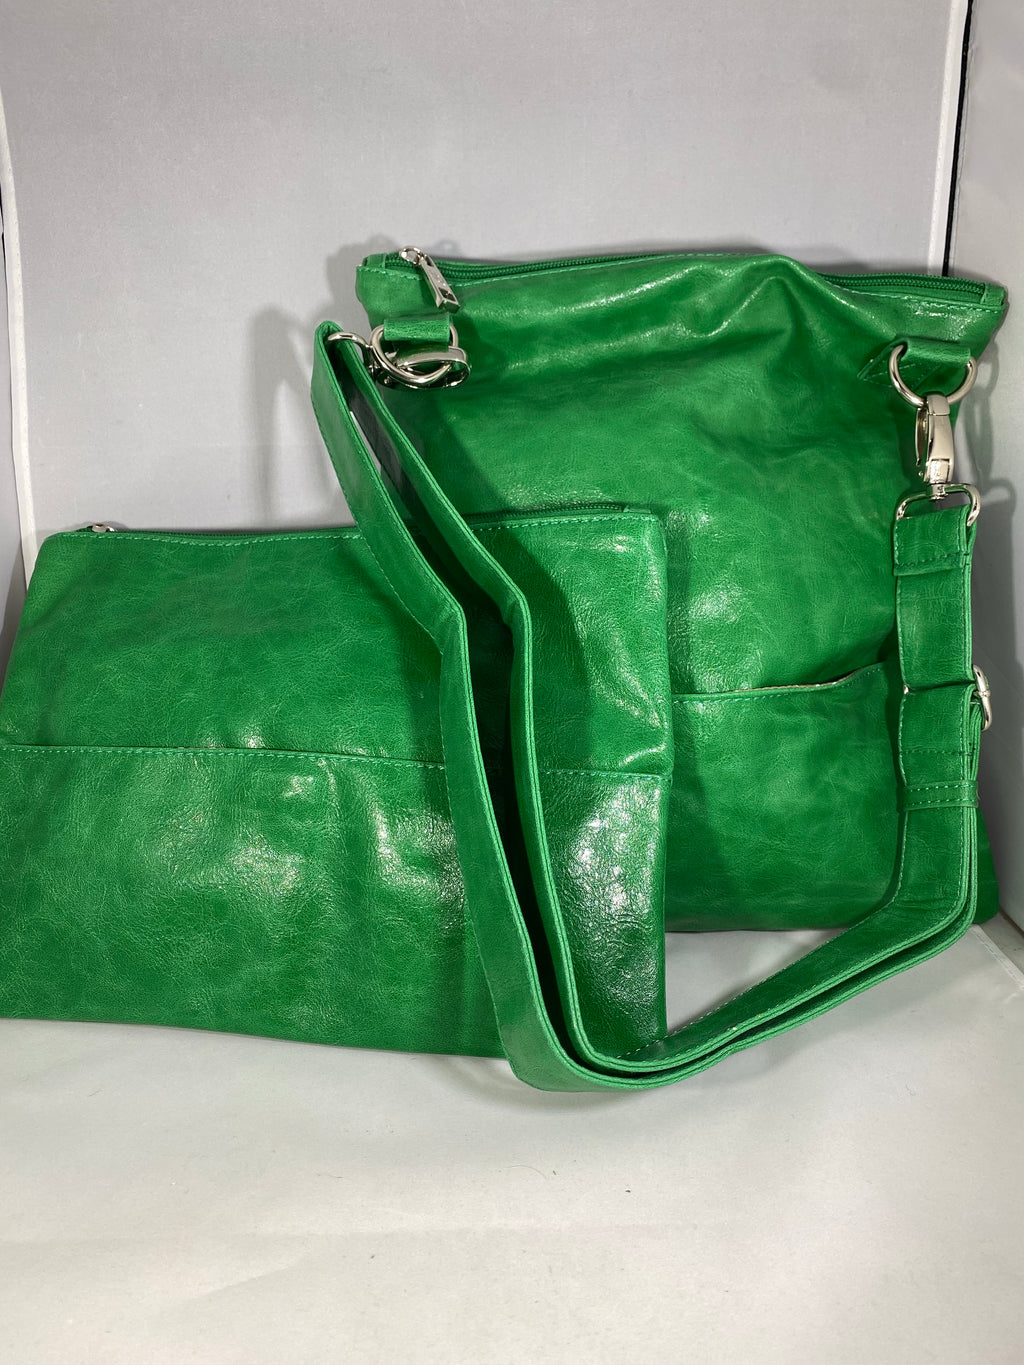 SQ Green 2 in 1 Handbag - Lighten Up Shop